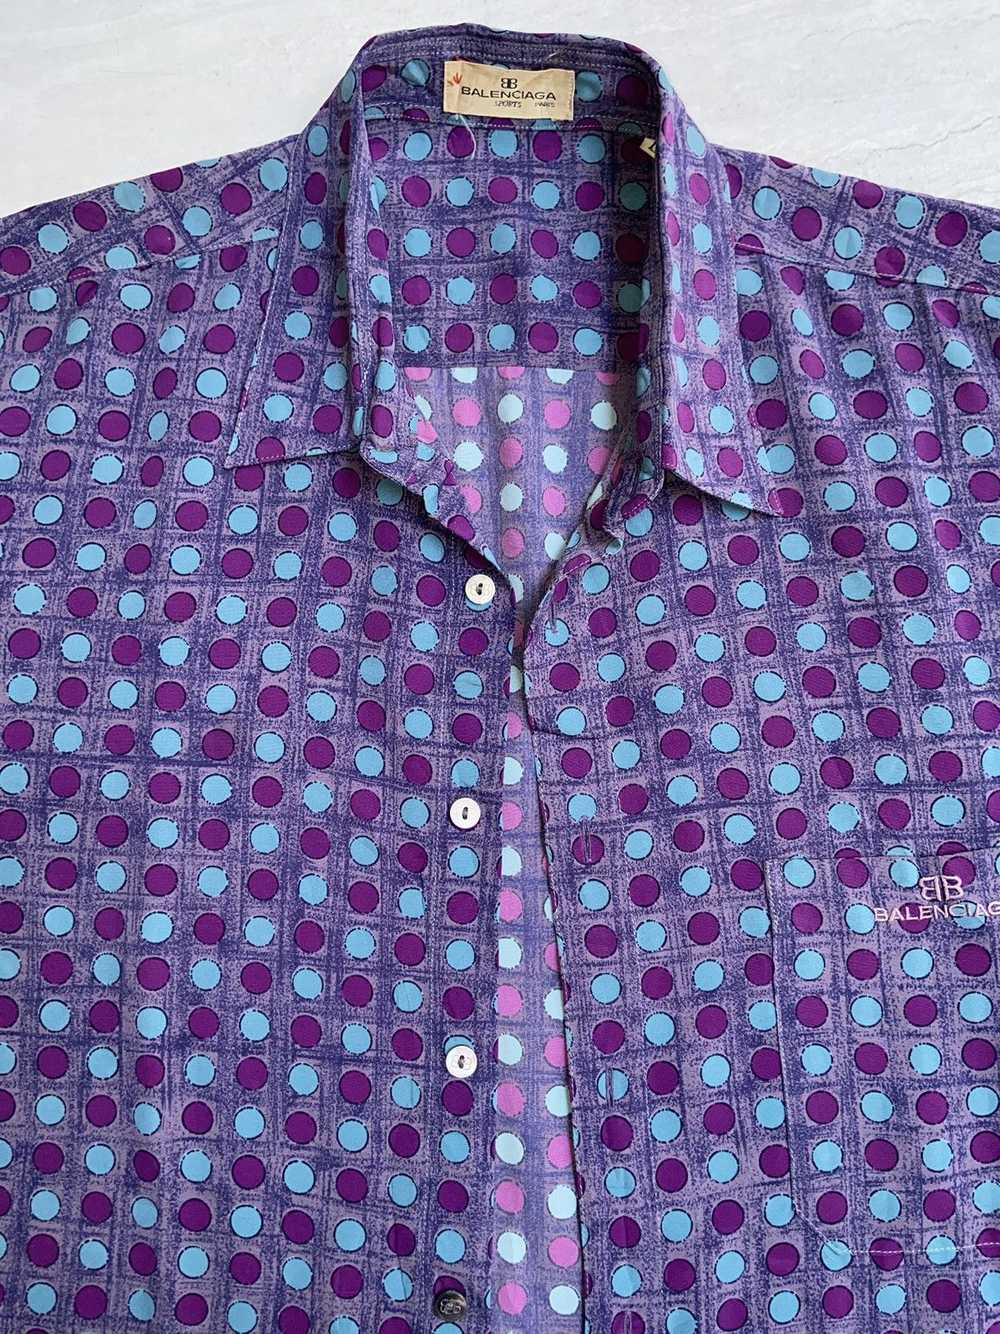 Balenciaga BALENCIAGA Purple Shirt/Outer Polka Do… - image 10